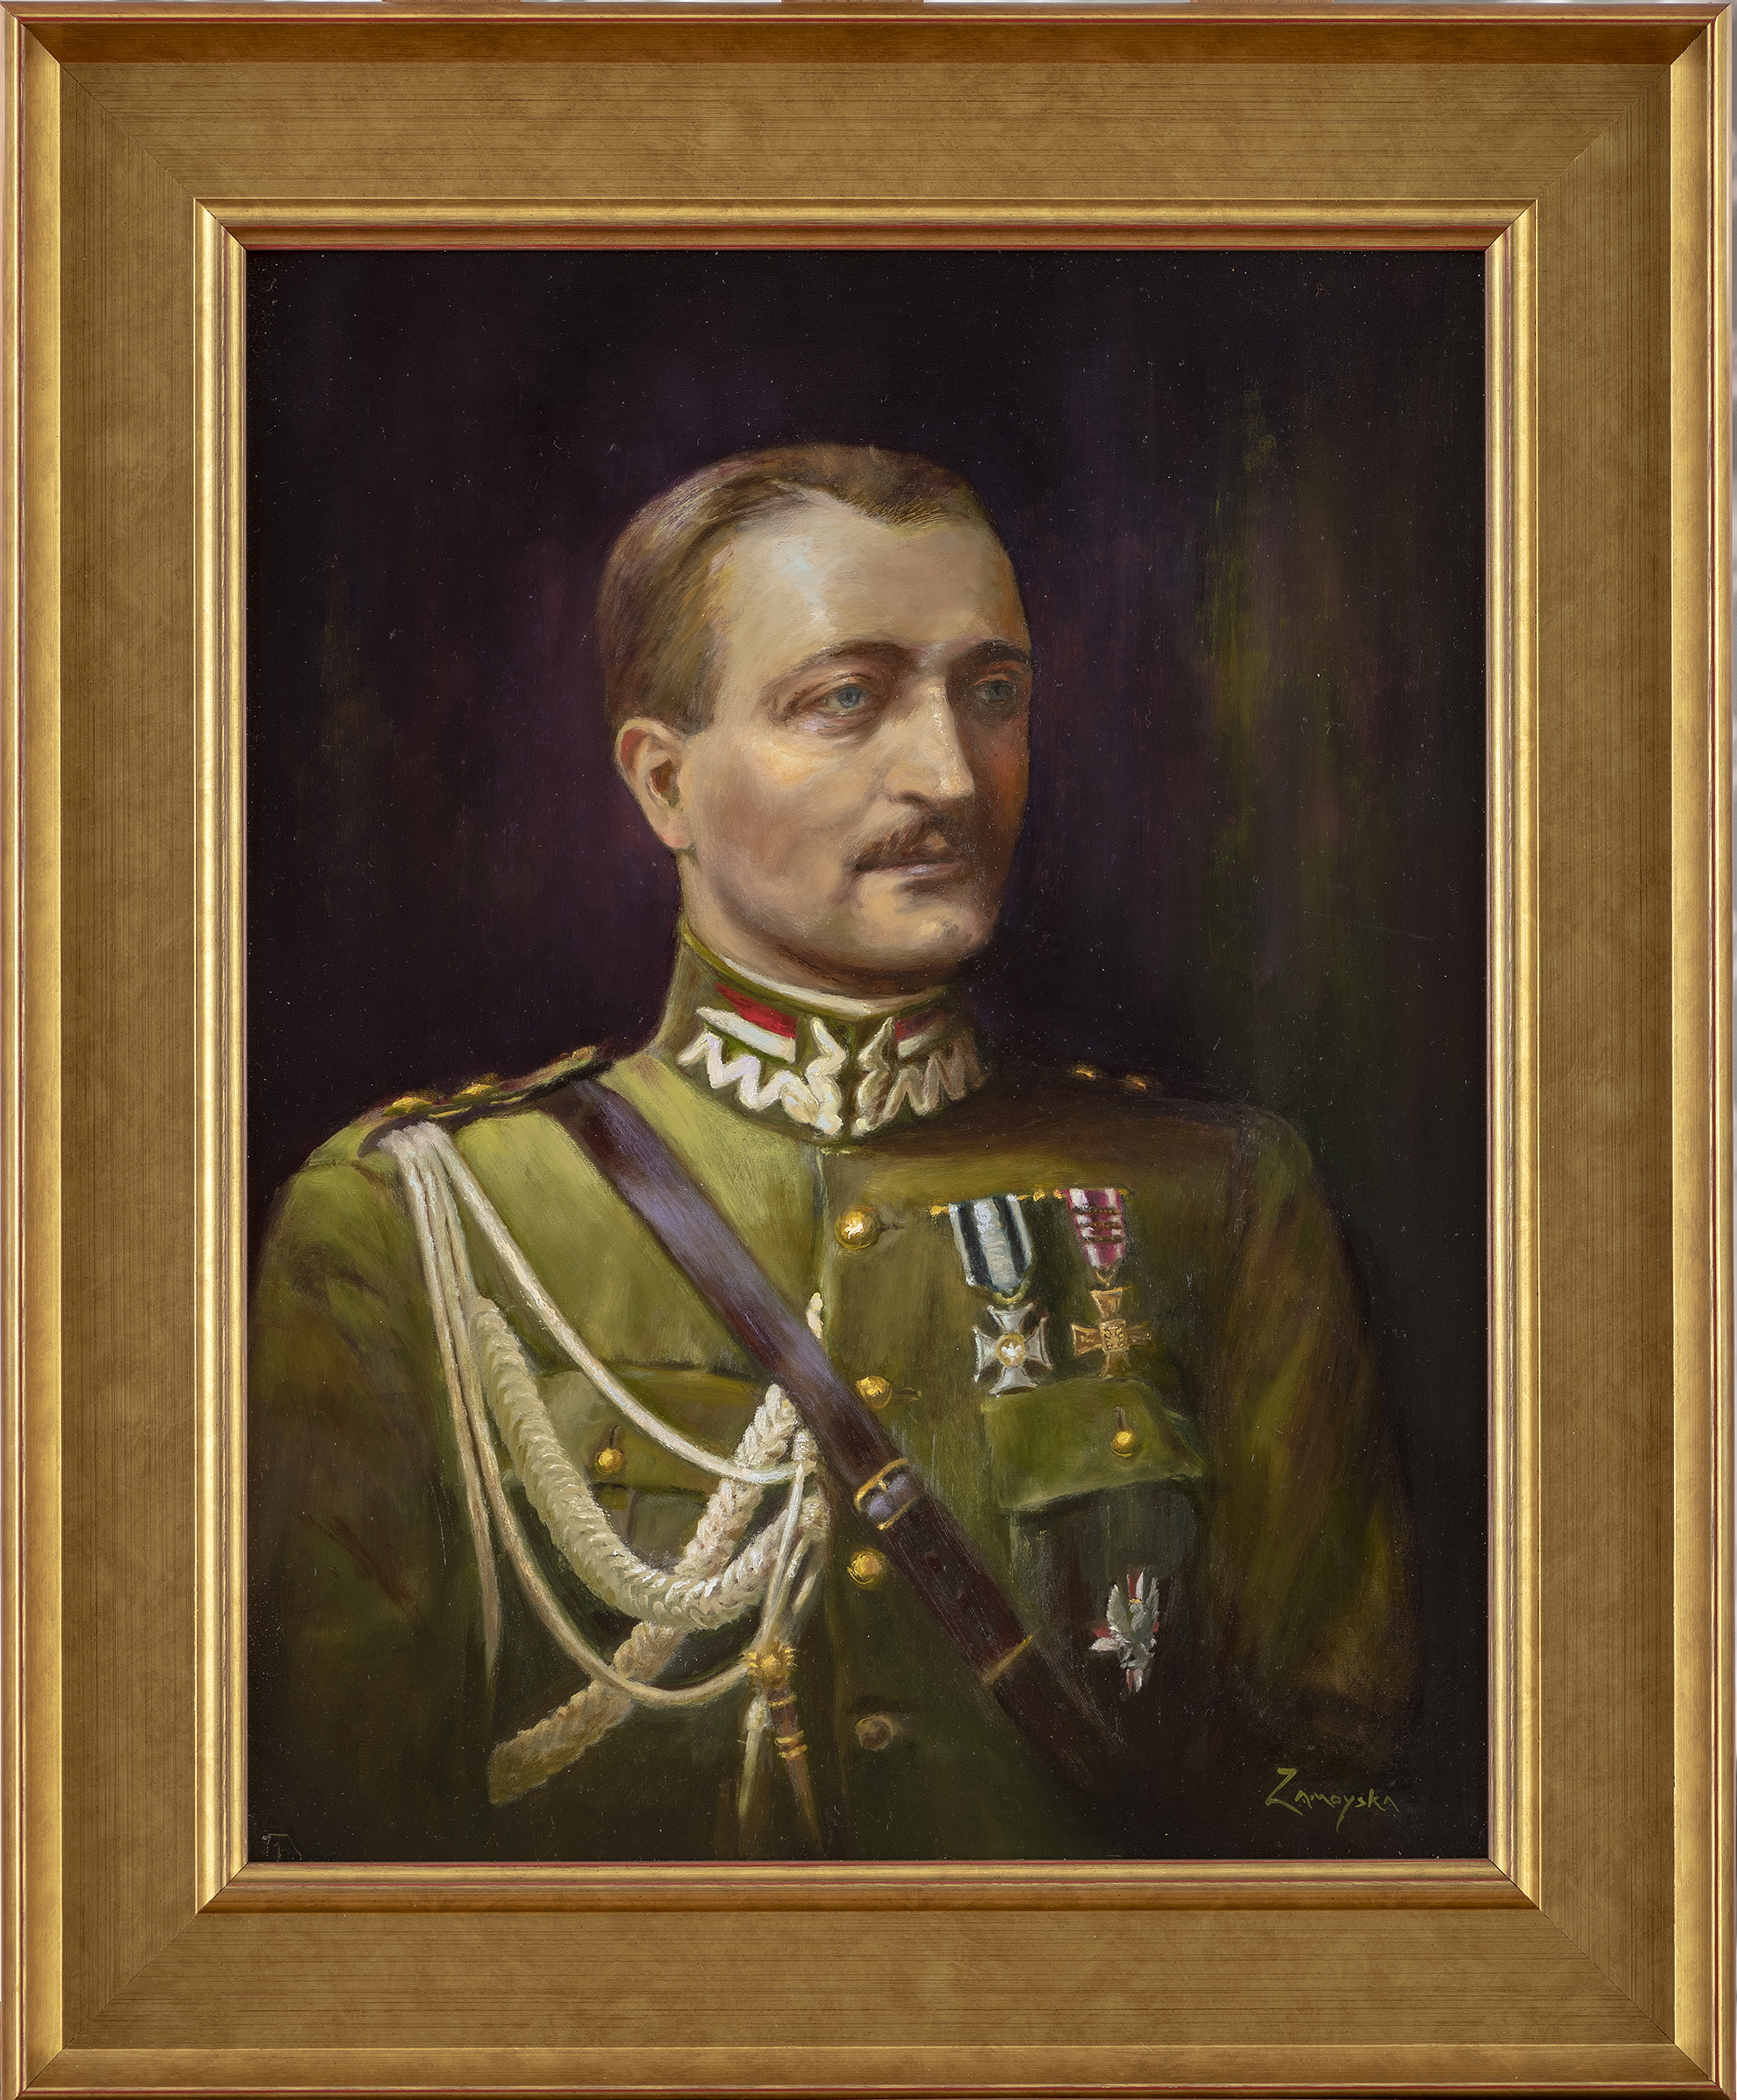 Portret przedstawia ojca autorki w mundurze oficera 1 Pułku Ułanów Krechowieckich, odznaczonego orderem wojskowym Virtuti Militari oraz czterokrotnie Krzyżem Walecznych.